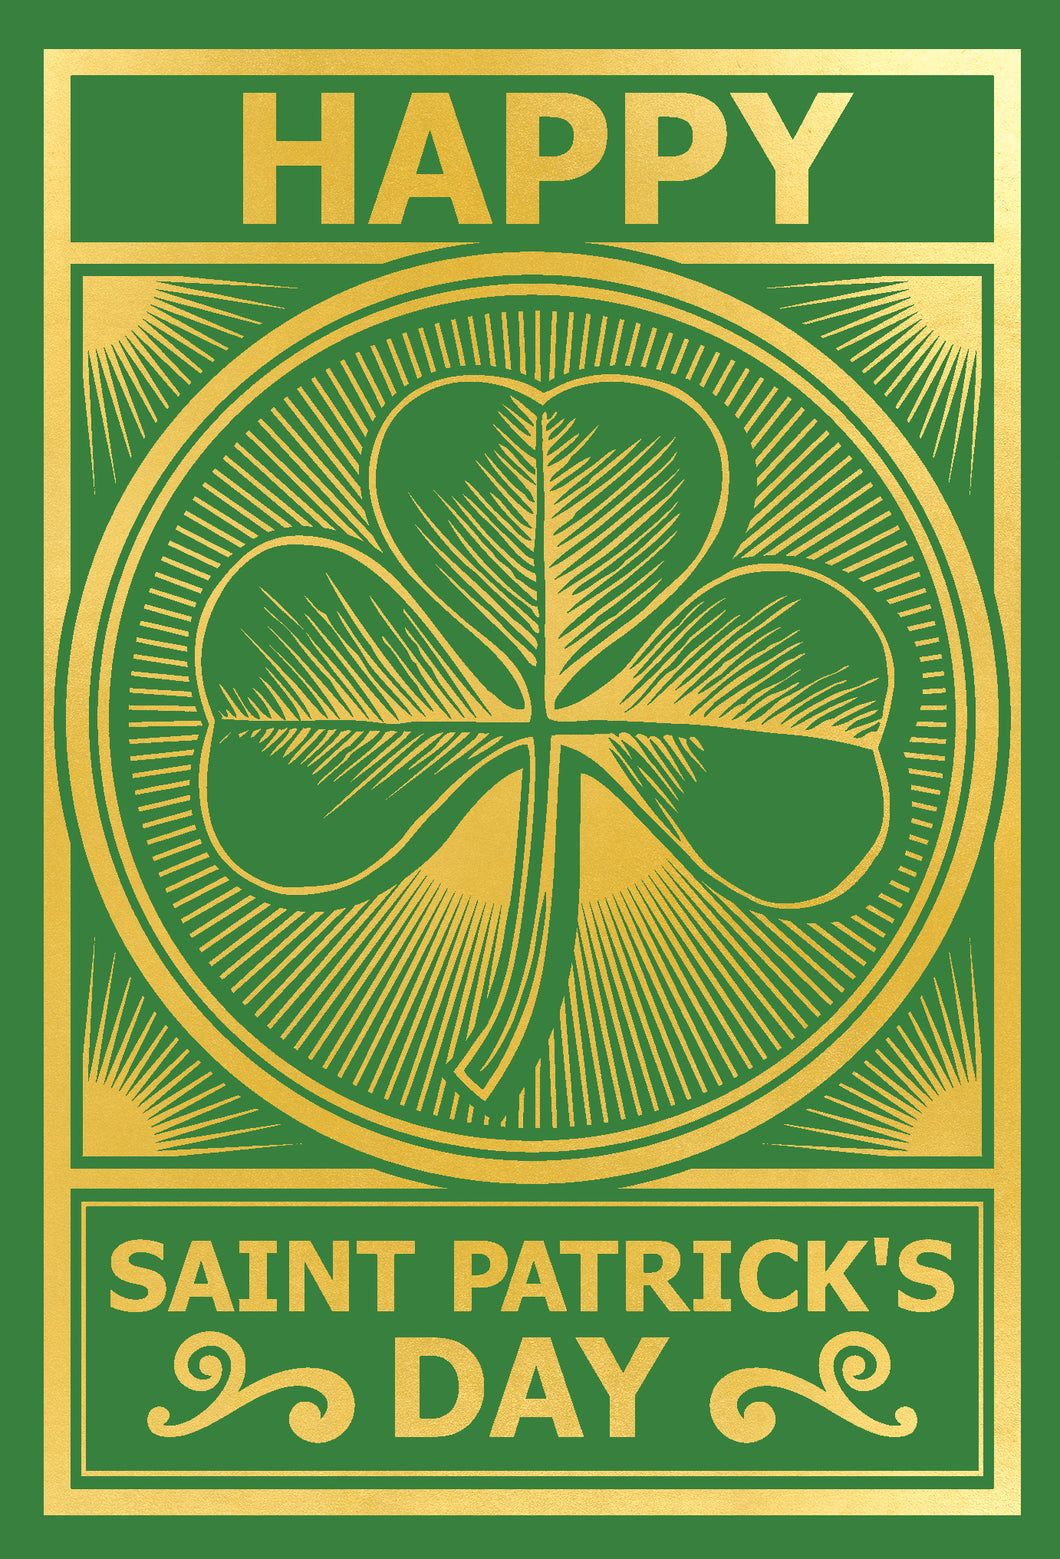 Vintage Shamrock St. Patrick's Day Card - Cardmore